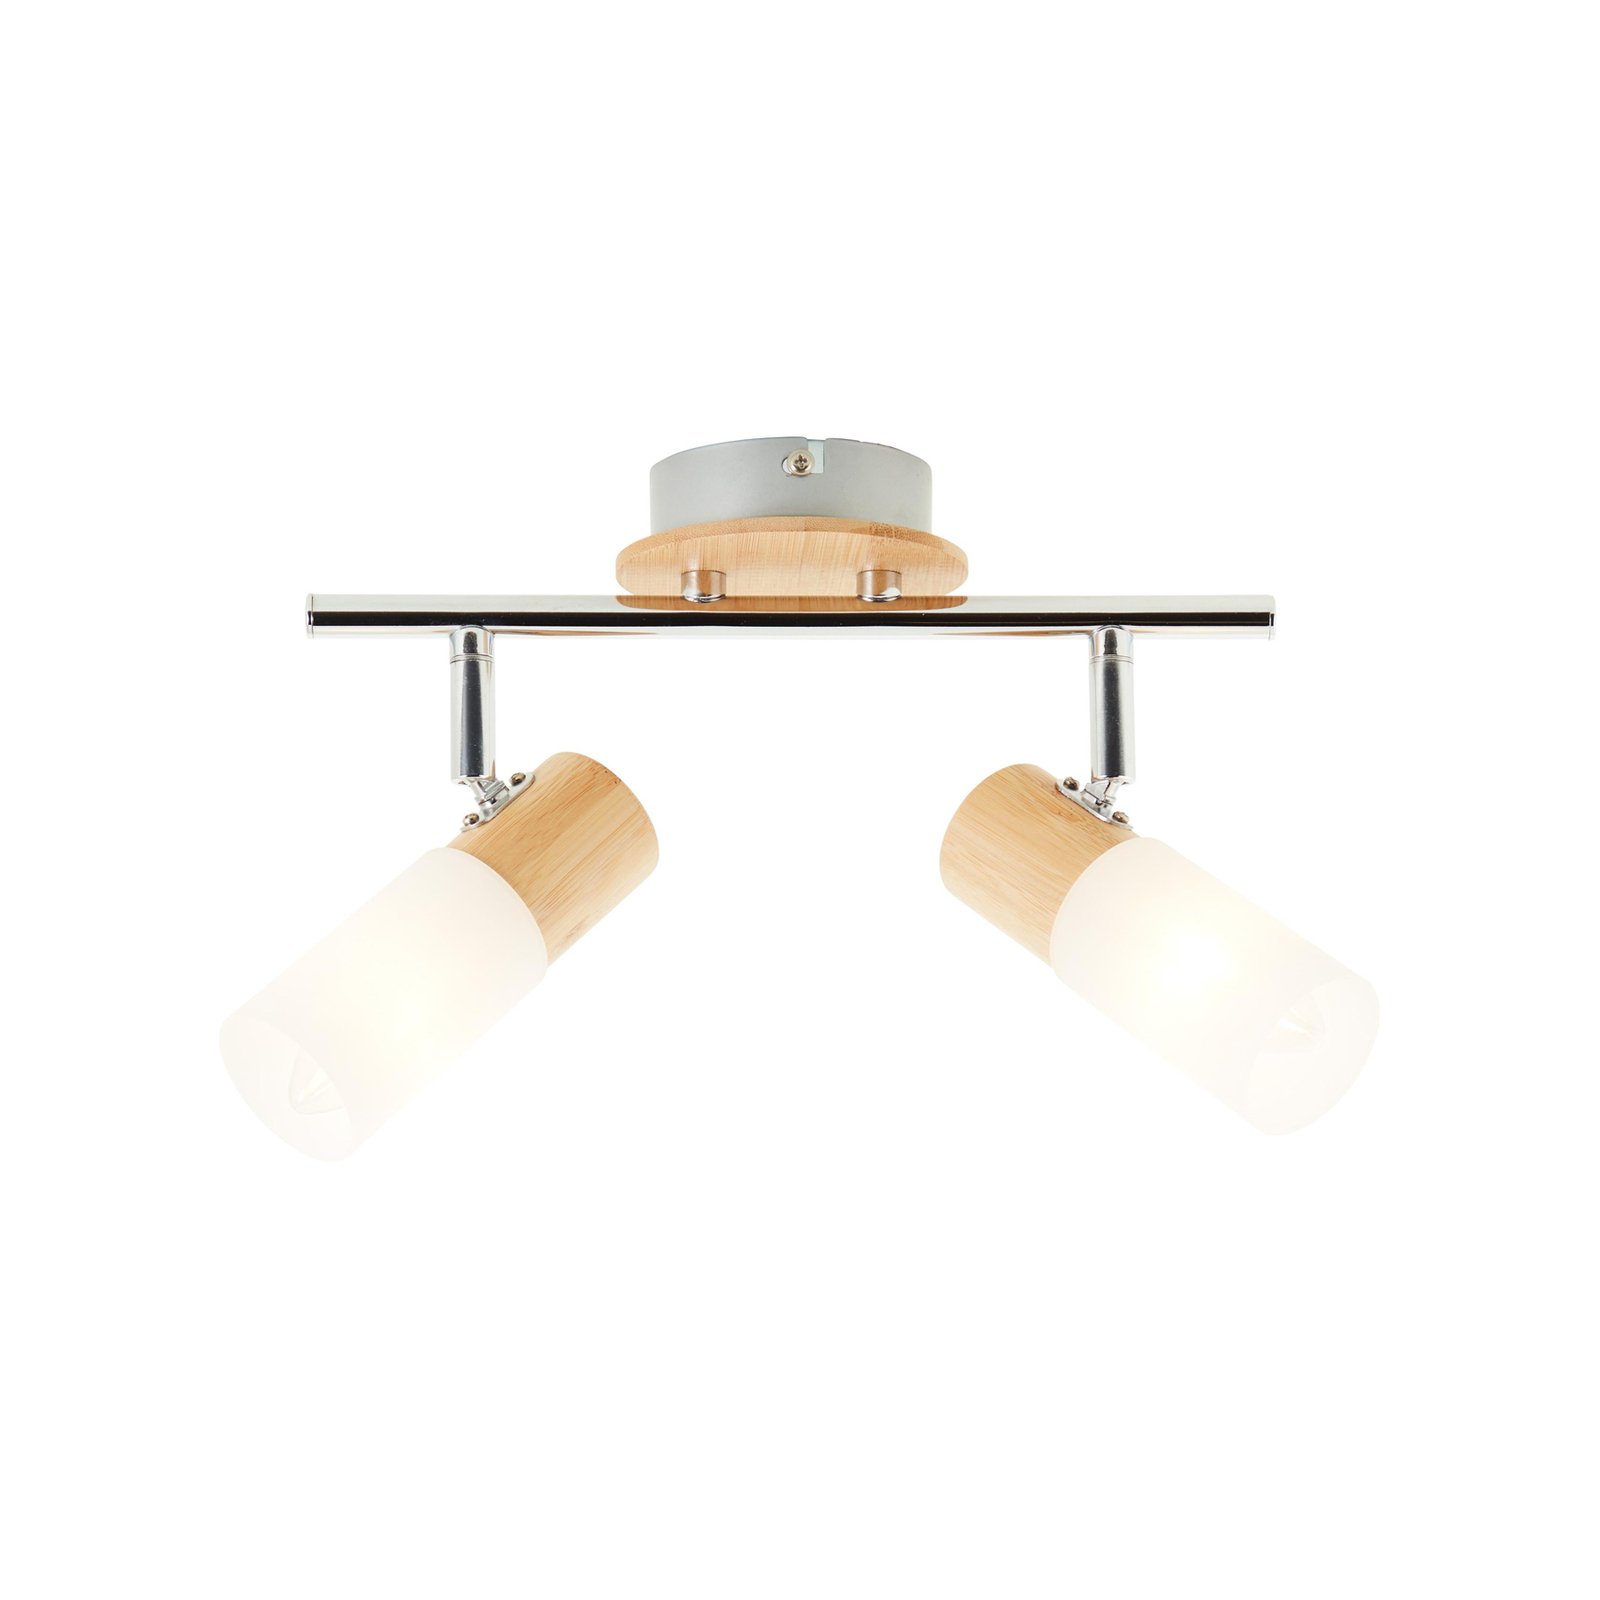 Babsan plafondspot, lengte 27,5 cm, licht hout, 2-lamps.